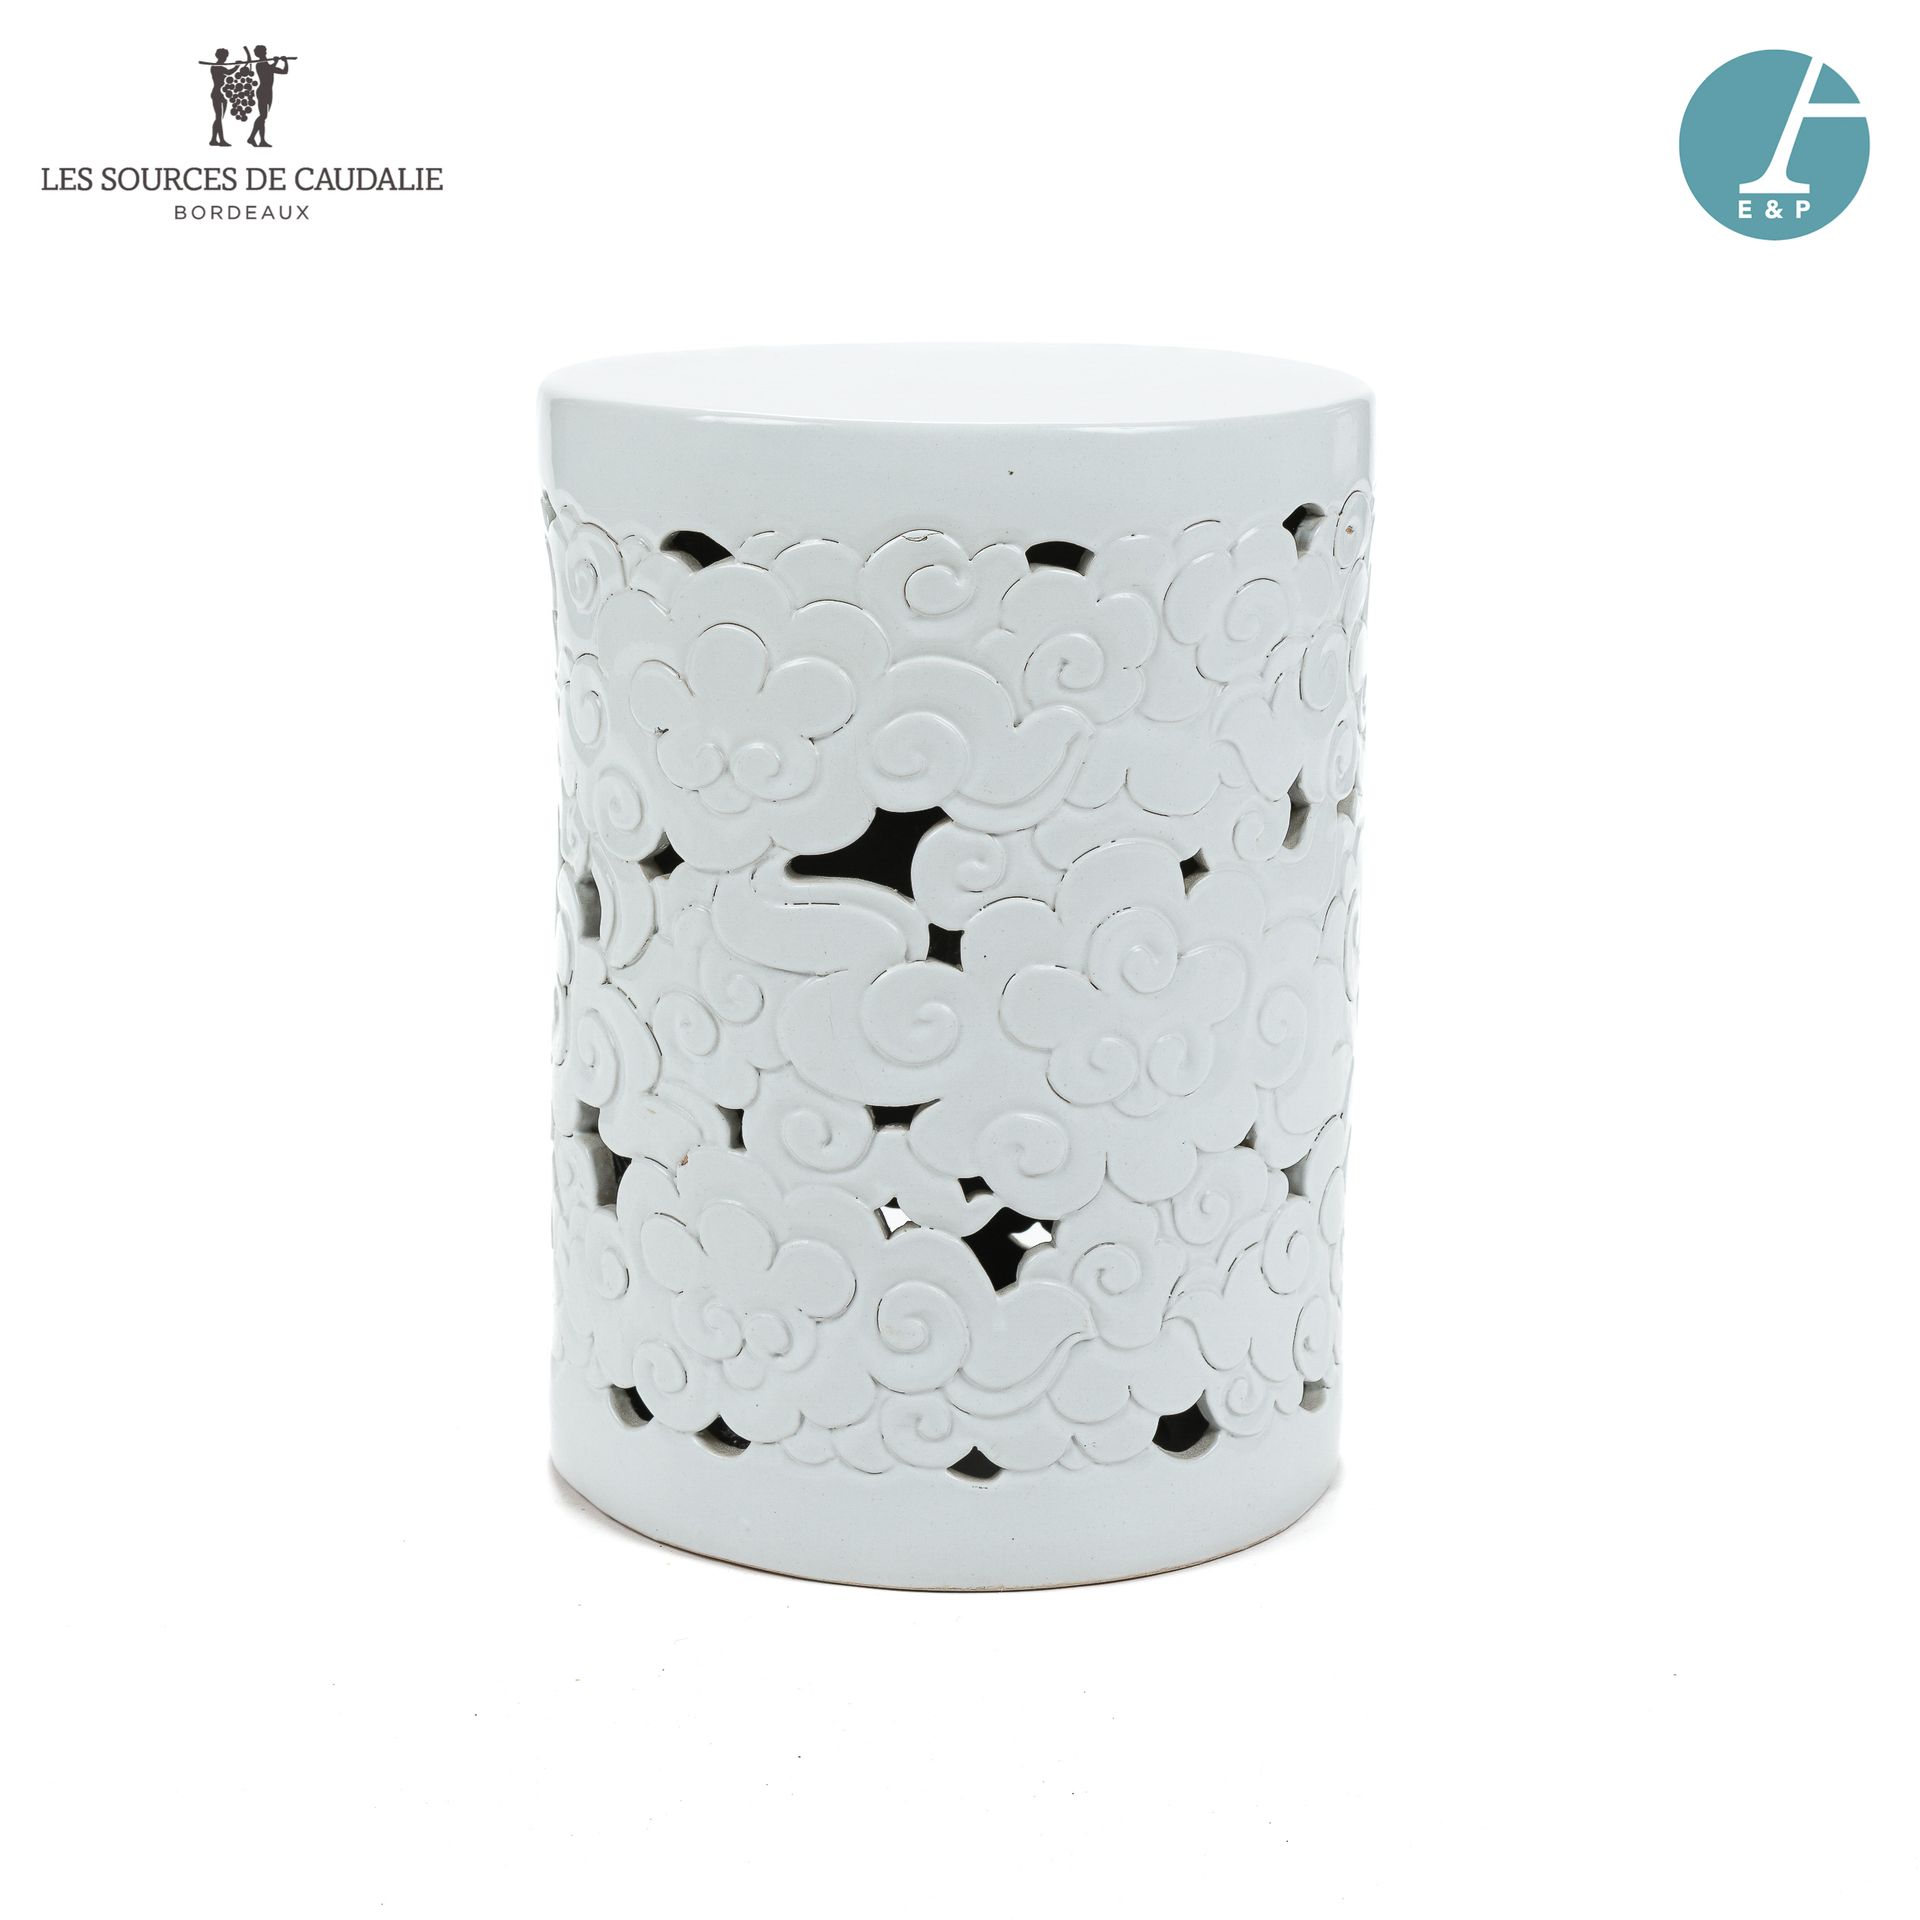 Null Dalla camera n°11 "Les Vendanges".

Sgabello in ceramica bianca con decoraz&hellip;